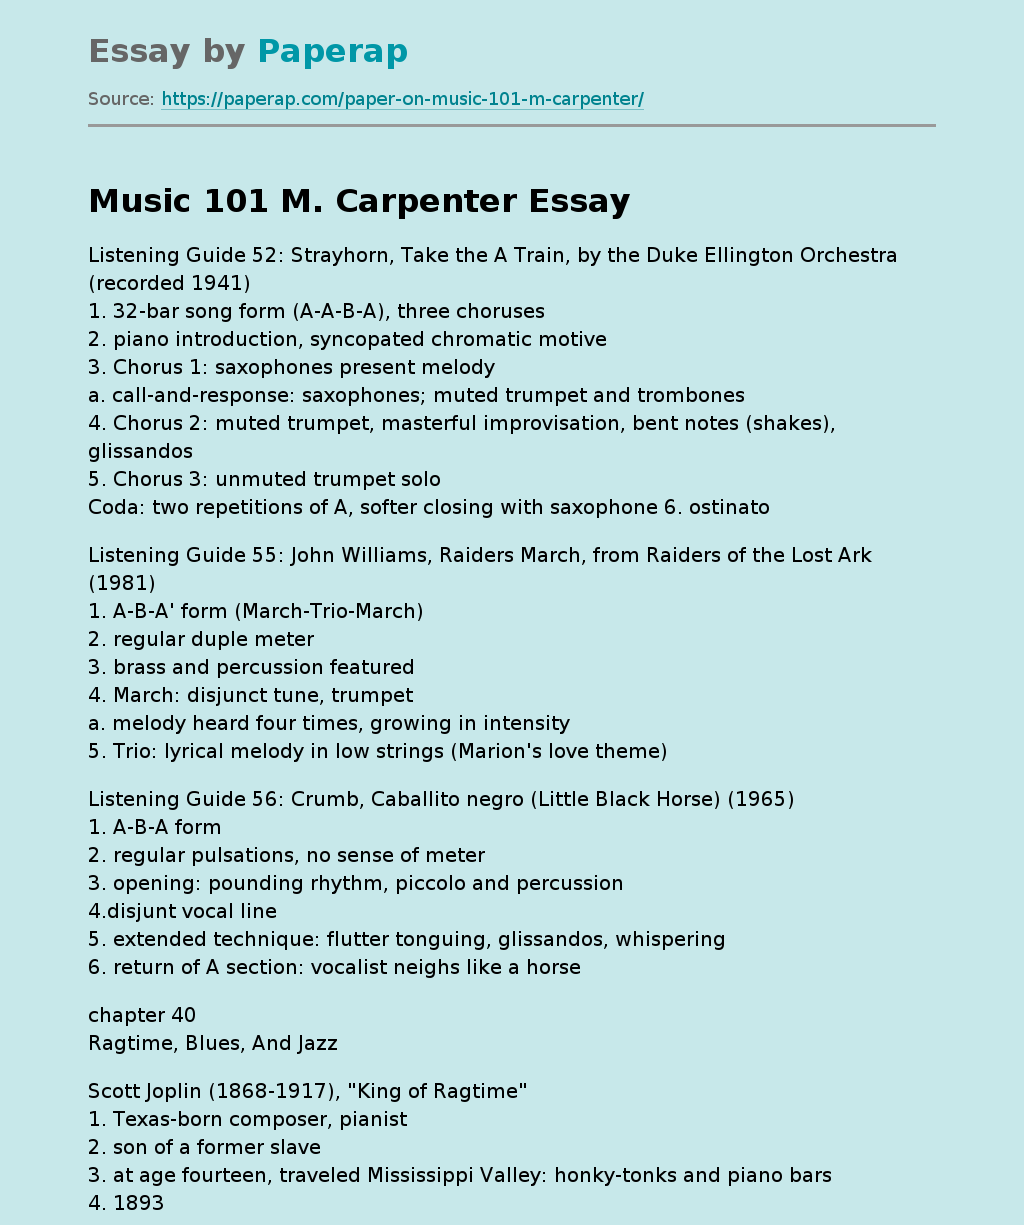 Music 101 M. Carpenter